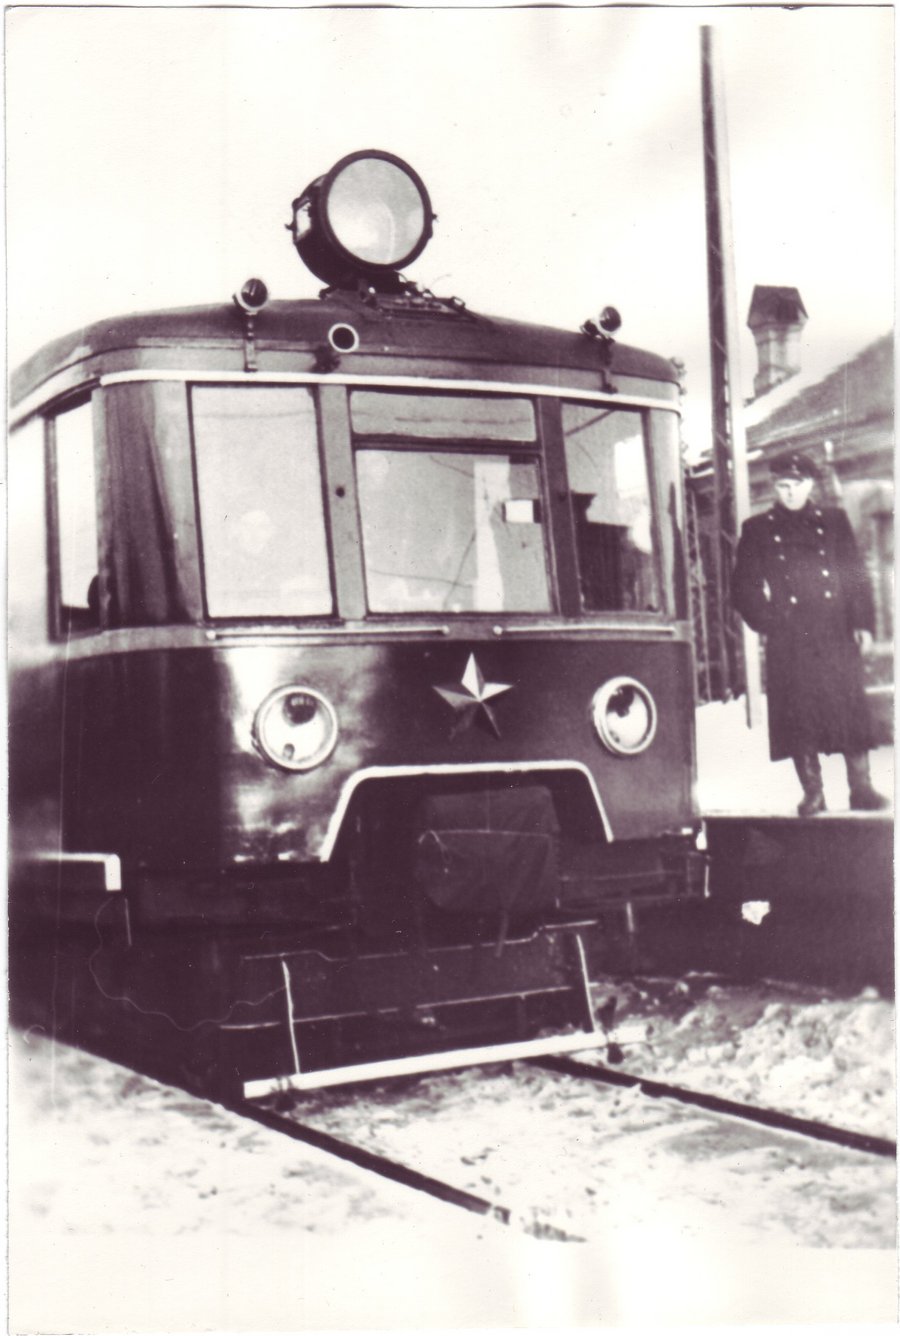 EM167
1953
Tallinn
